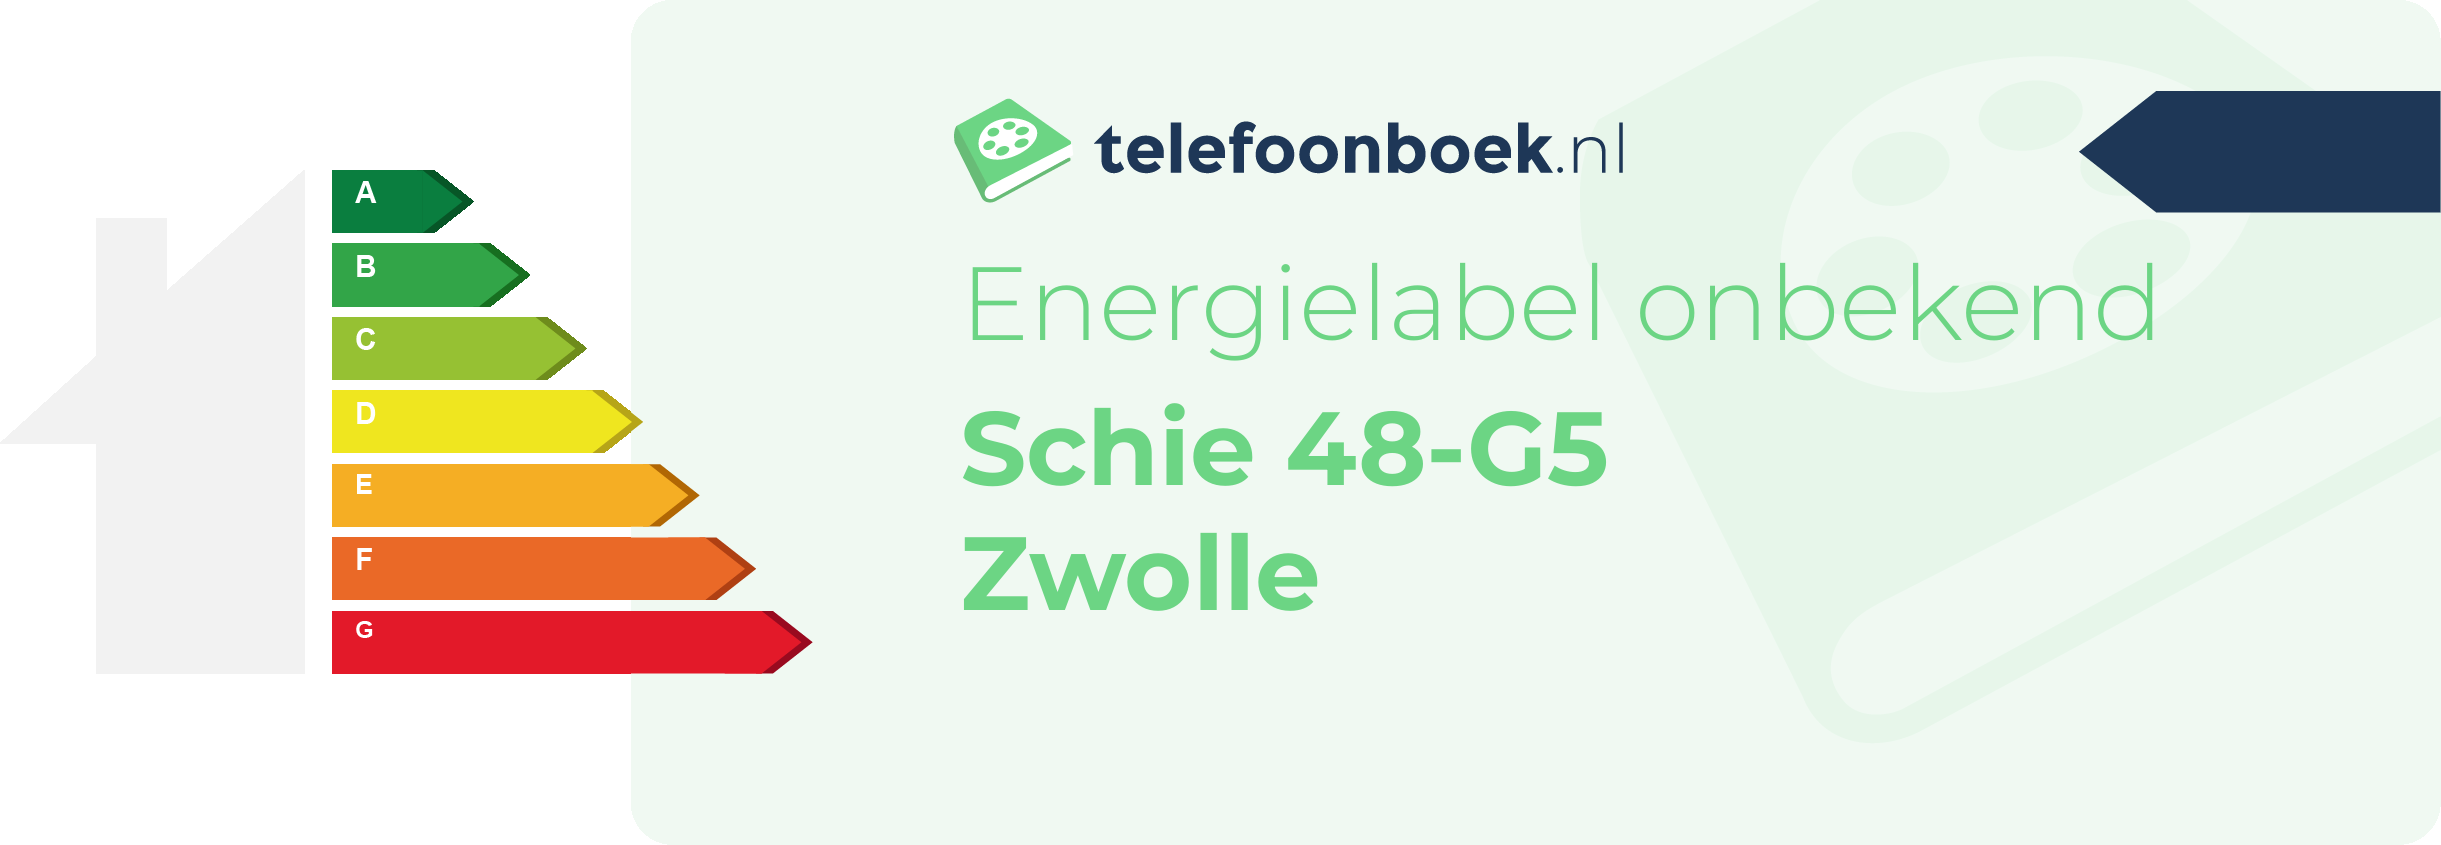 Energielabel Schie 48-G5 Zwolle